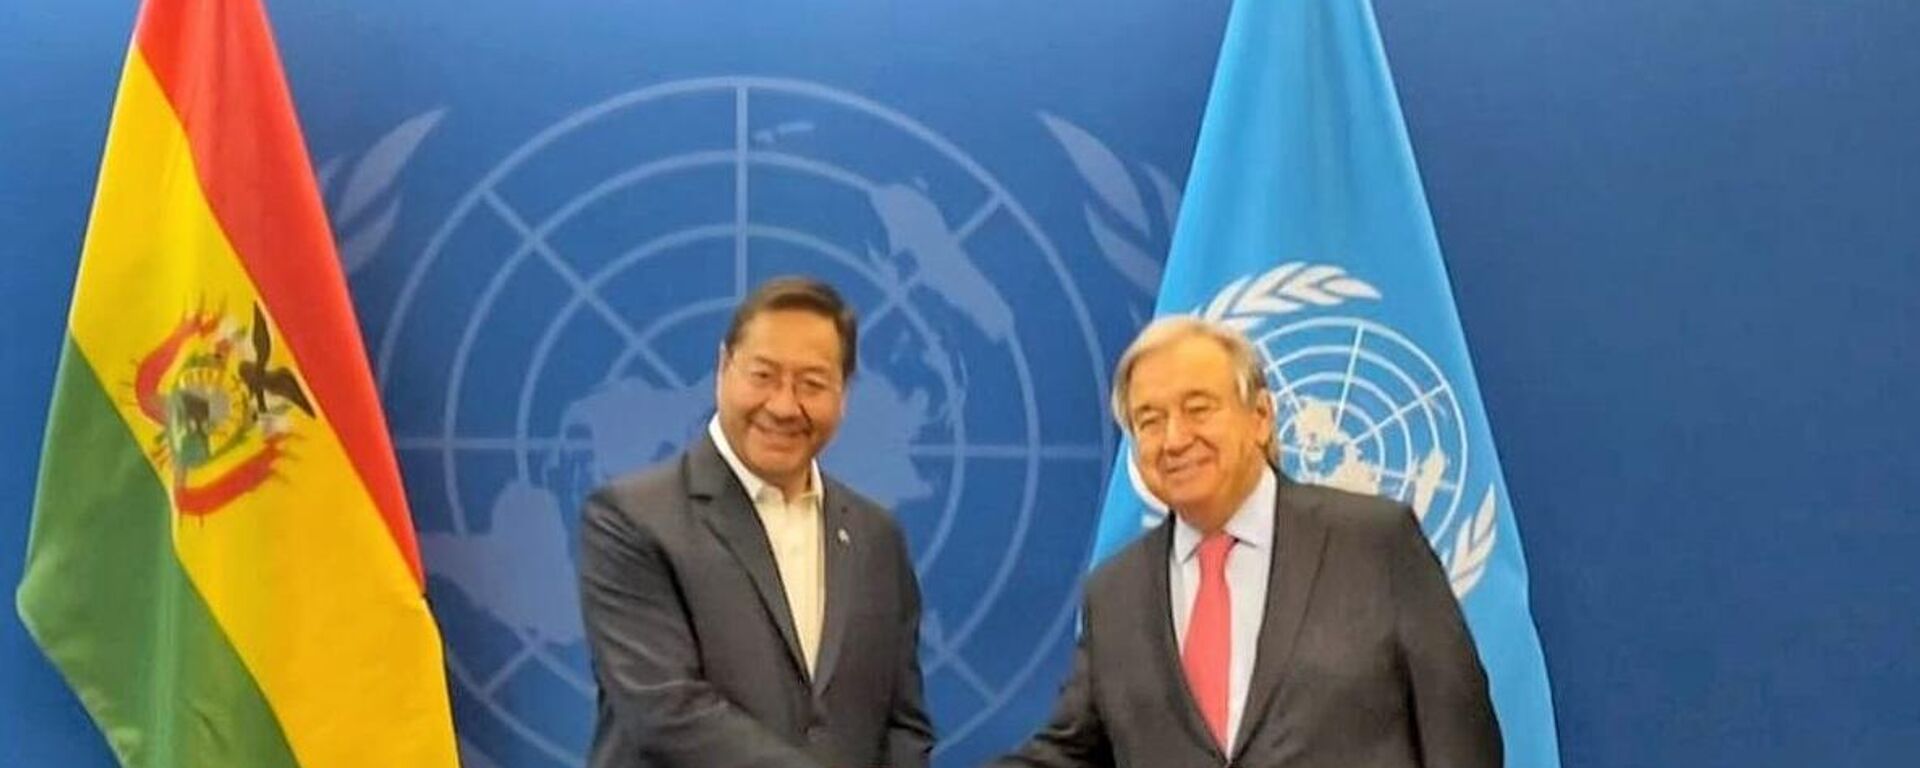 El presidente de Bolivia, Luis Arce, y el secretario general de las Naciones Unidas, António Guterres - Sputnik Mundo, 1920, 20.09.2022